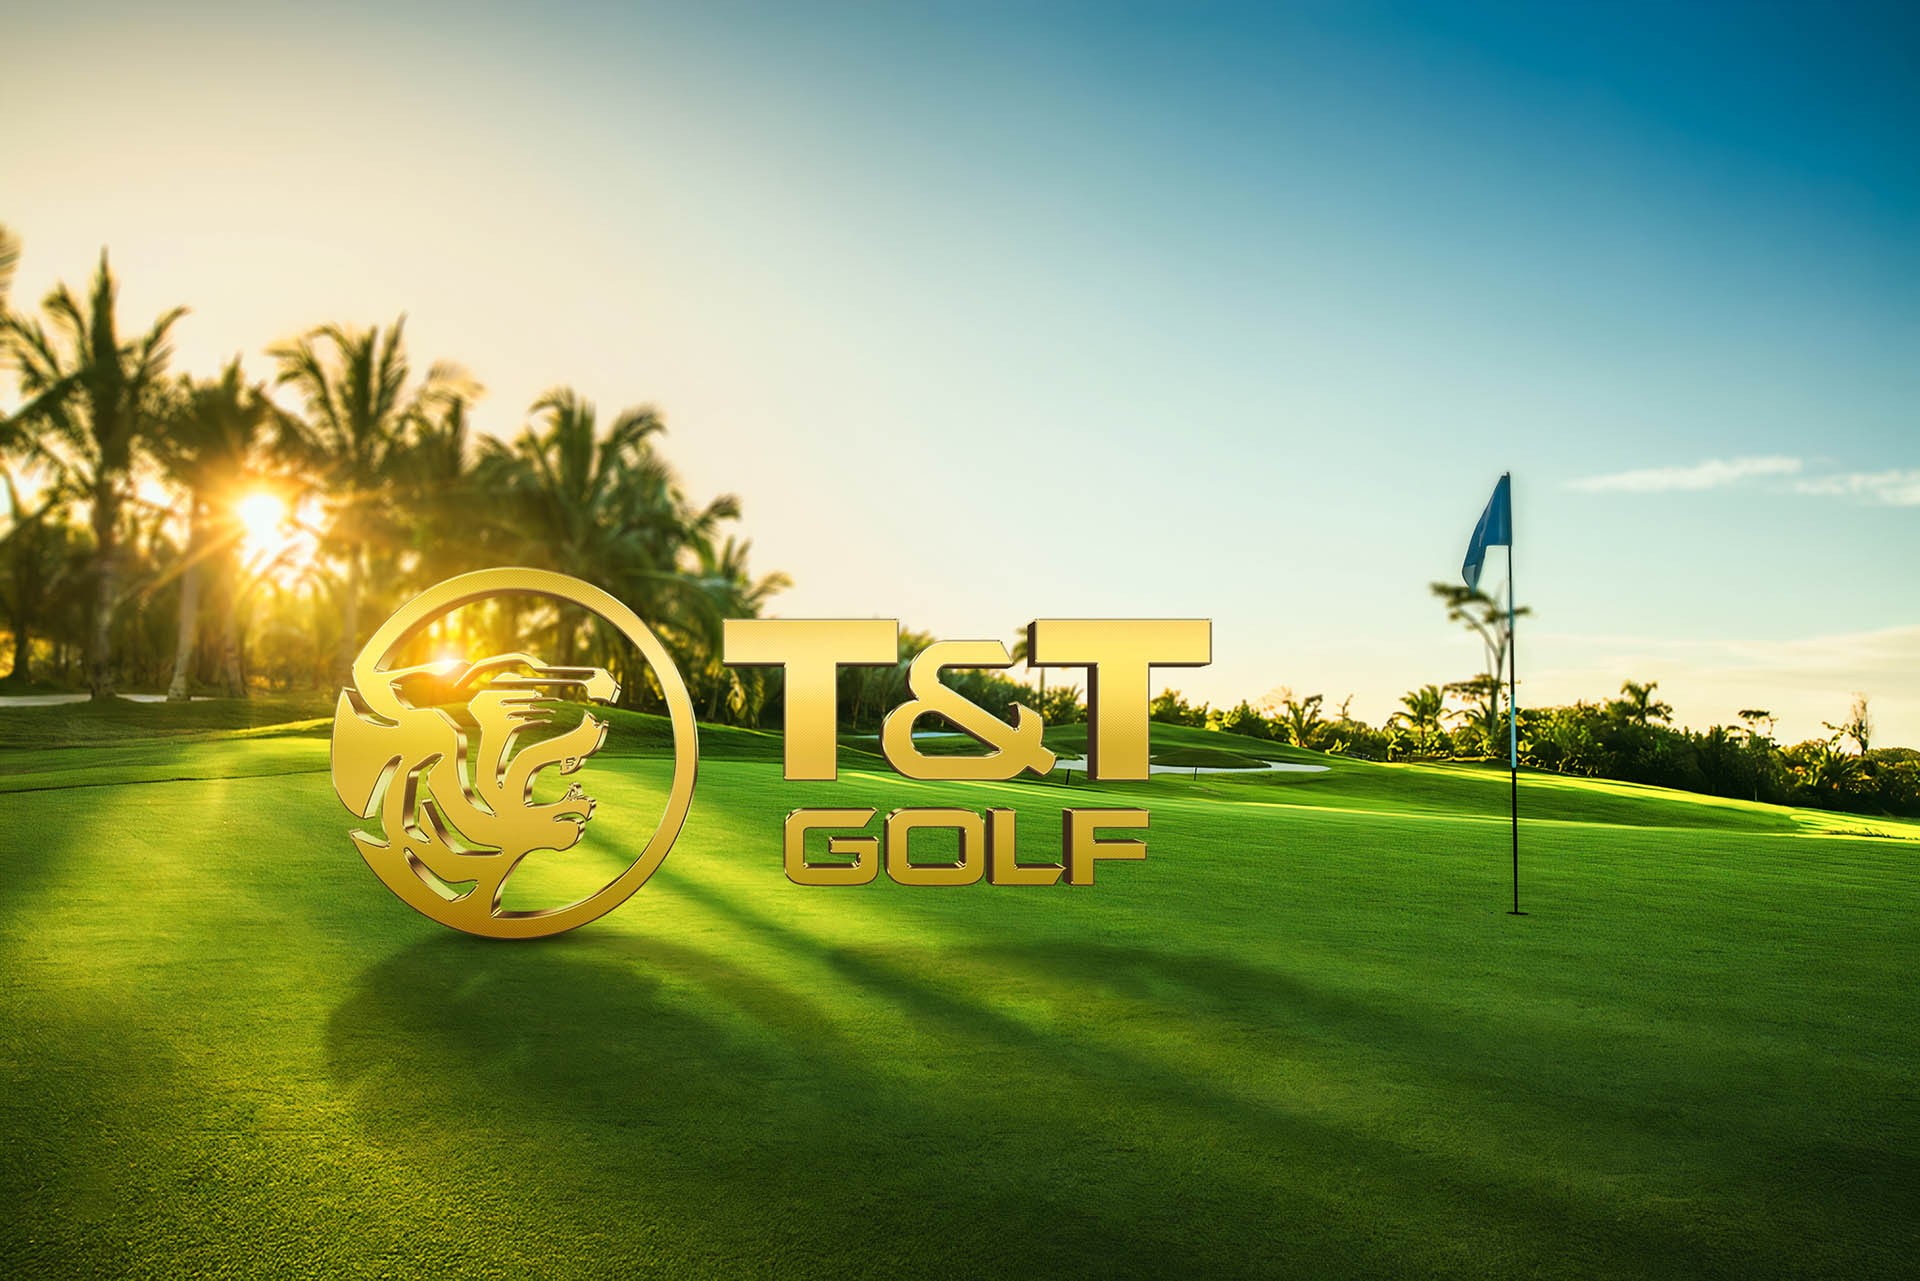 ): T&T Group ra mắt thương hiệu T&T Golf với dự án đầu tiên mang tên Văn Lang Empire Golf Club có quy mô khoảng 168ha, nằm tại tỉnh Phú Thọ.